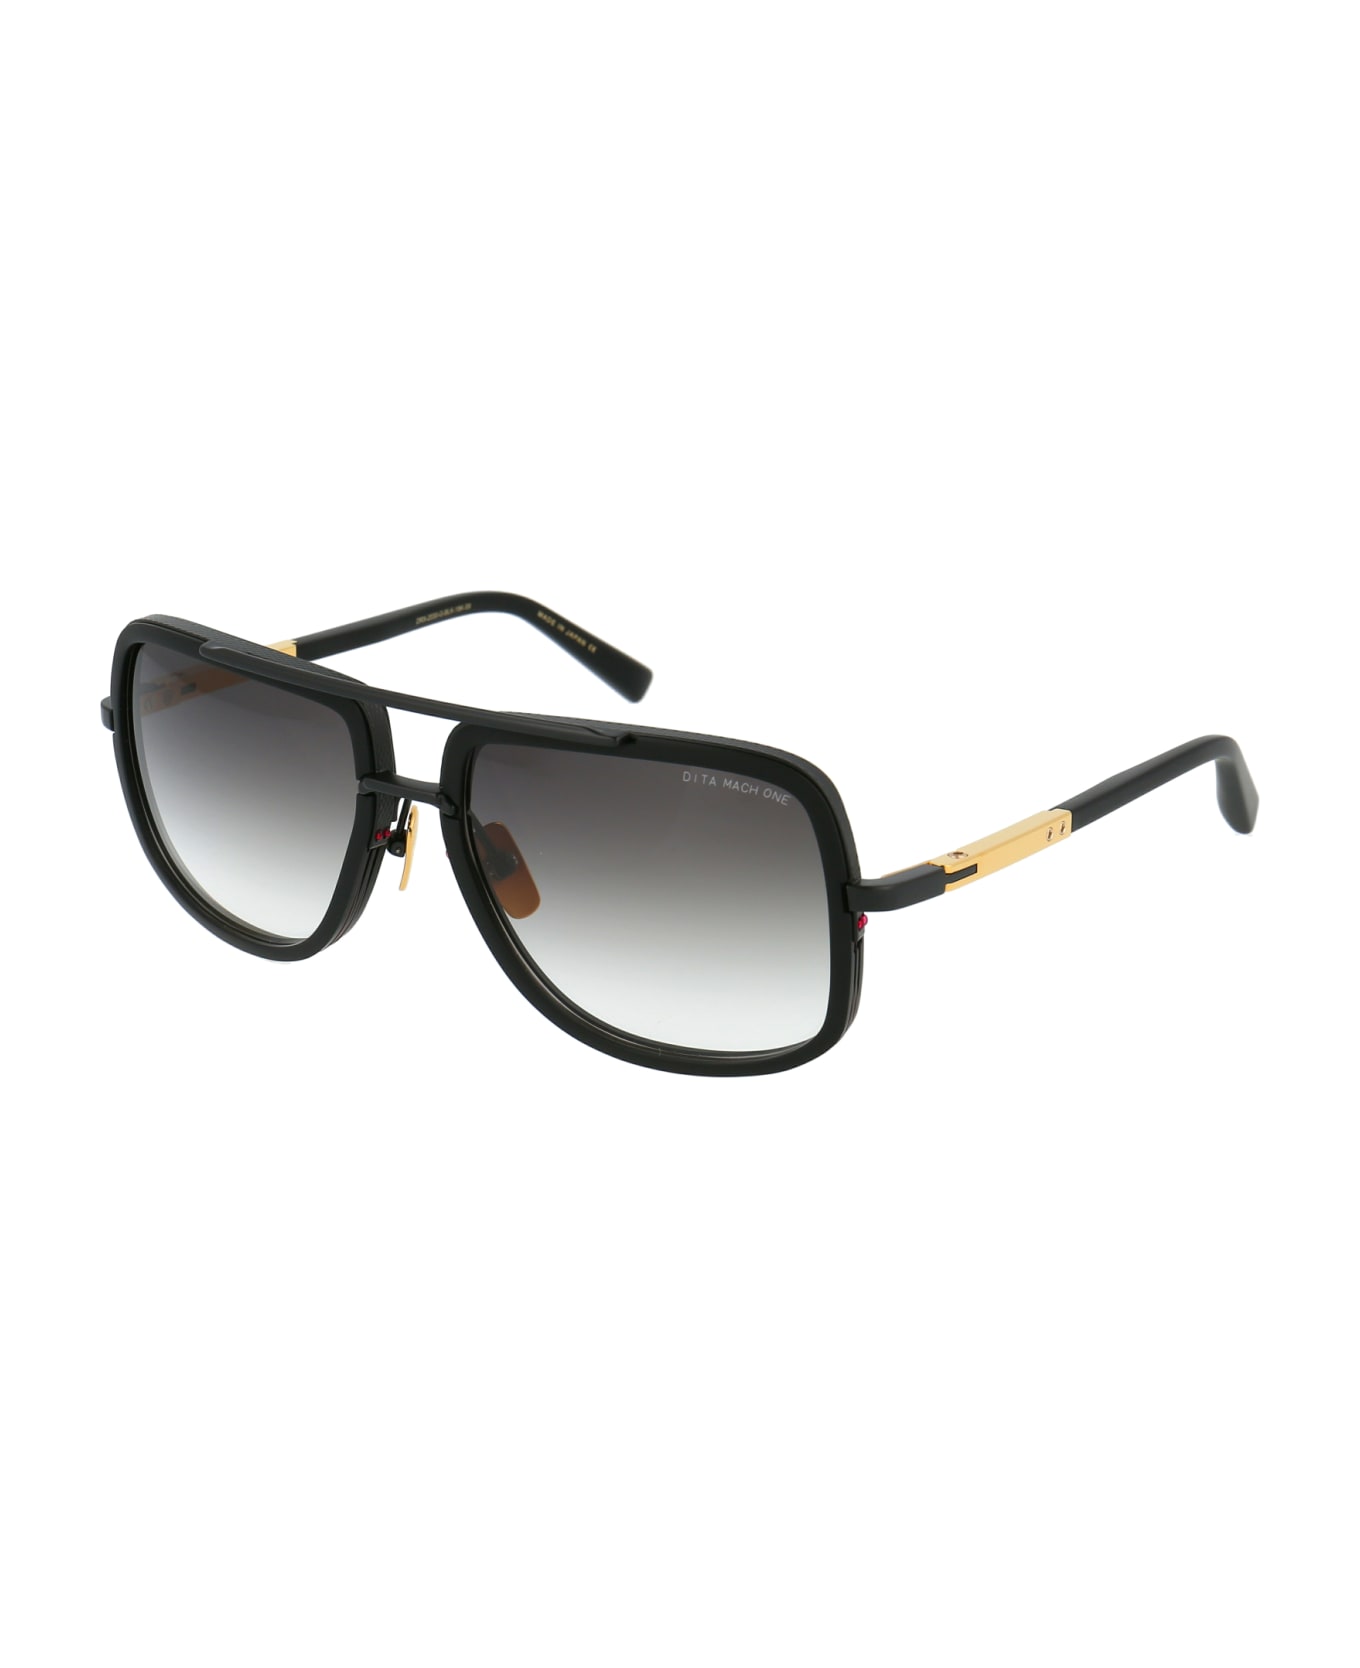 Dita Mach-one Sunglasses - Matte Black-Matte Black